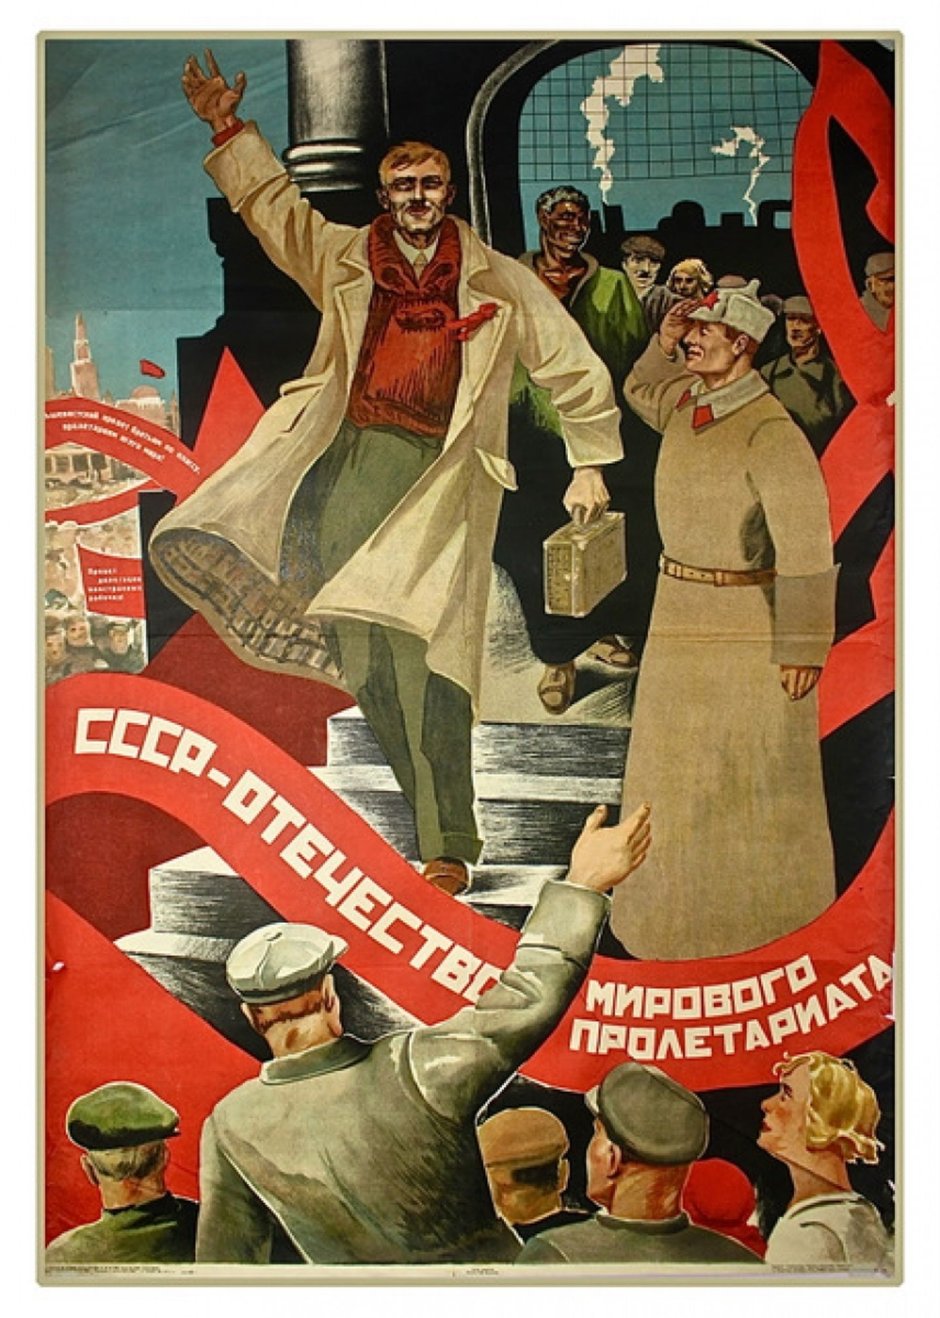 КПРФ Ленин